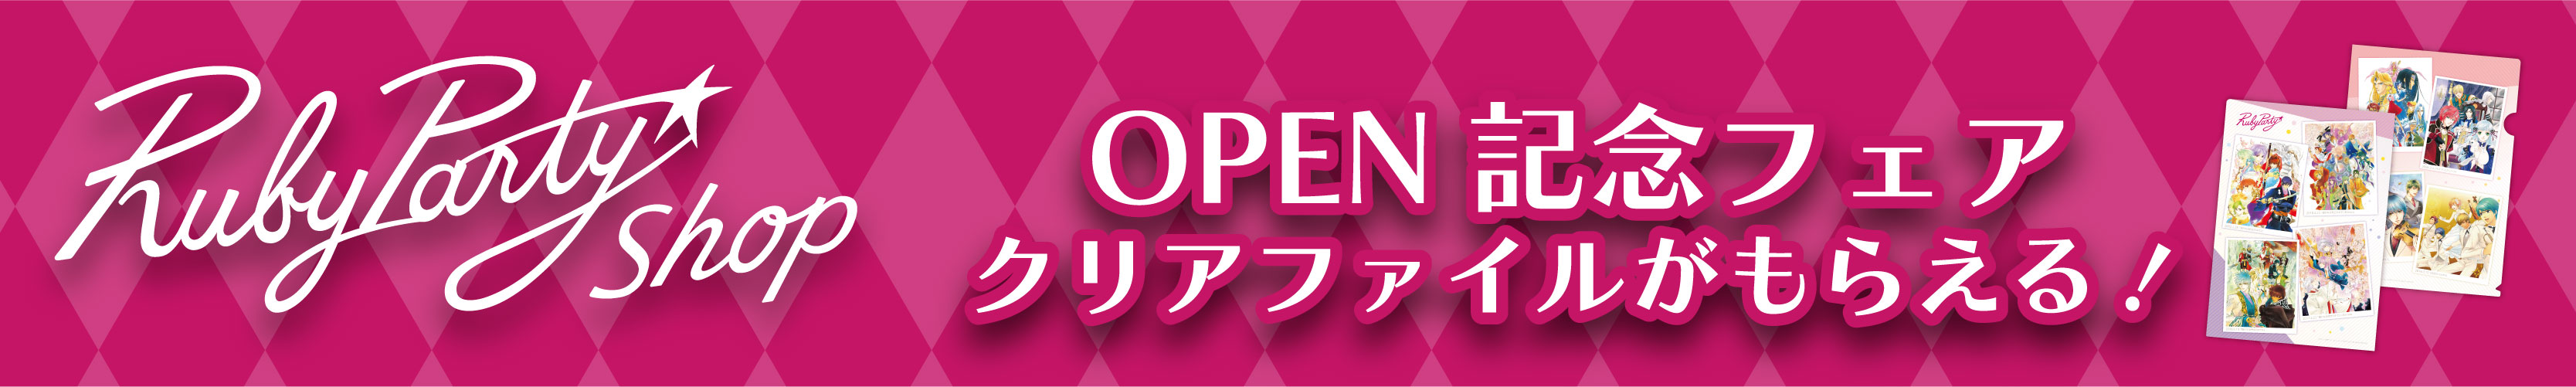 RubyParty Shopオープン記念キャンペーン